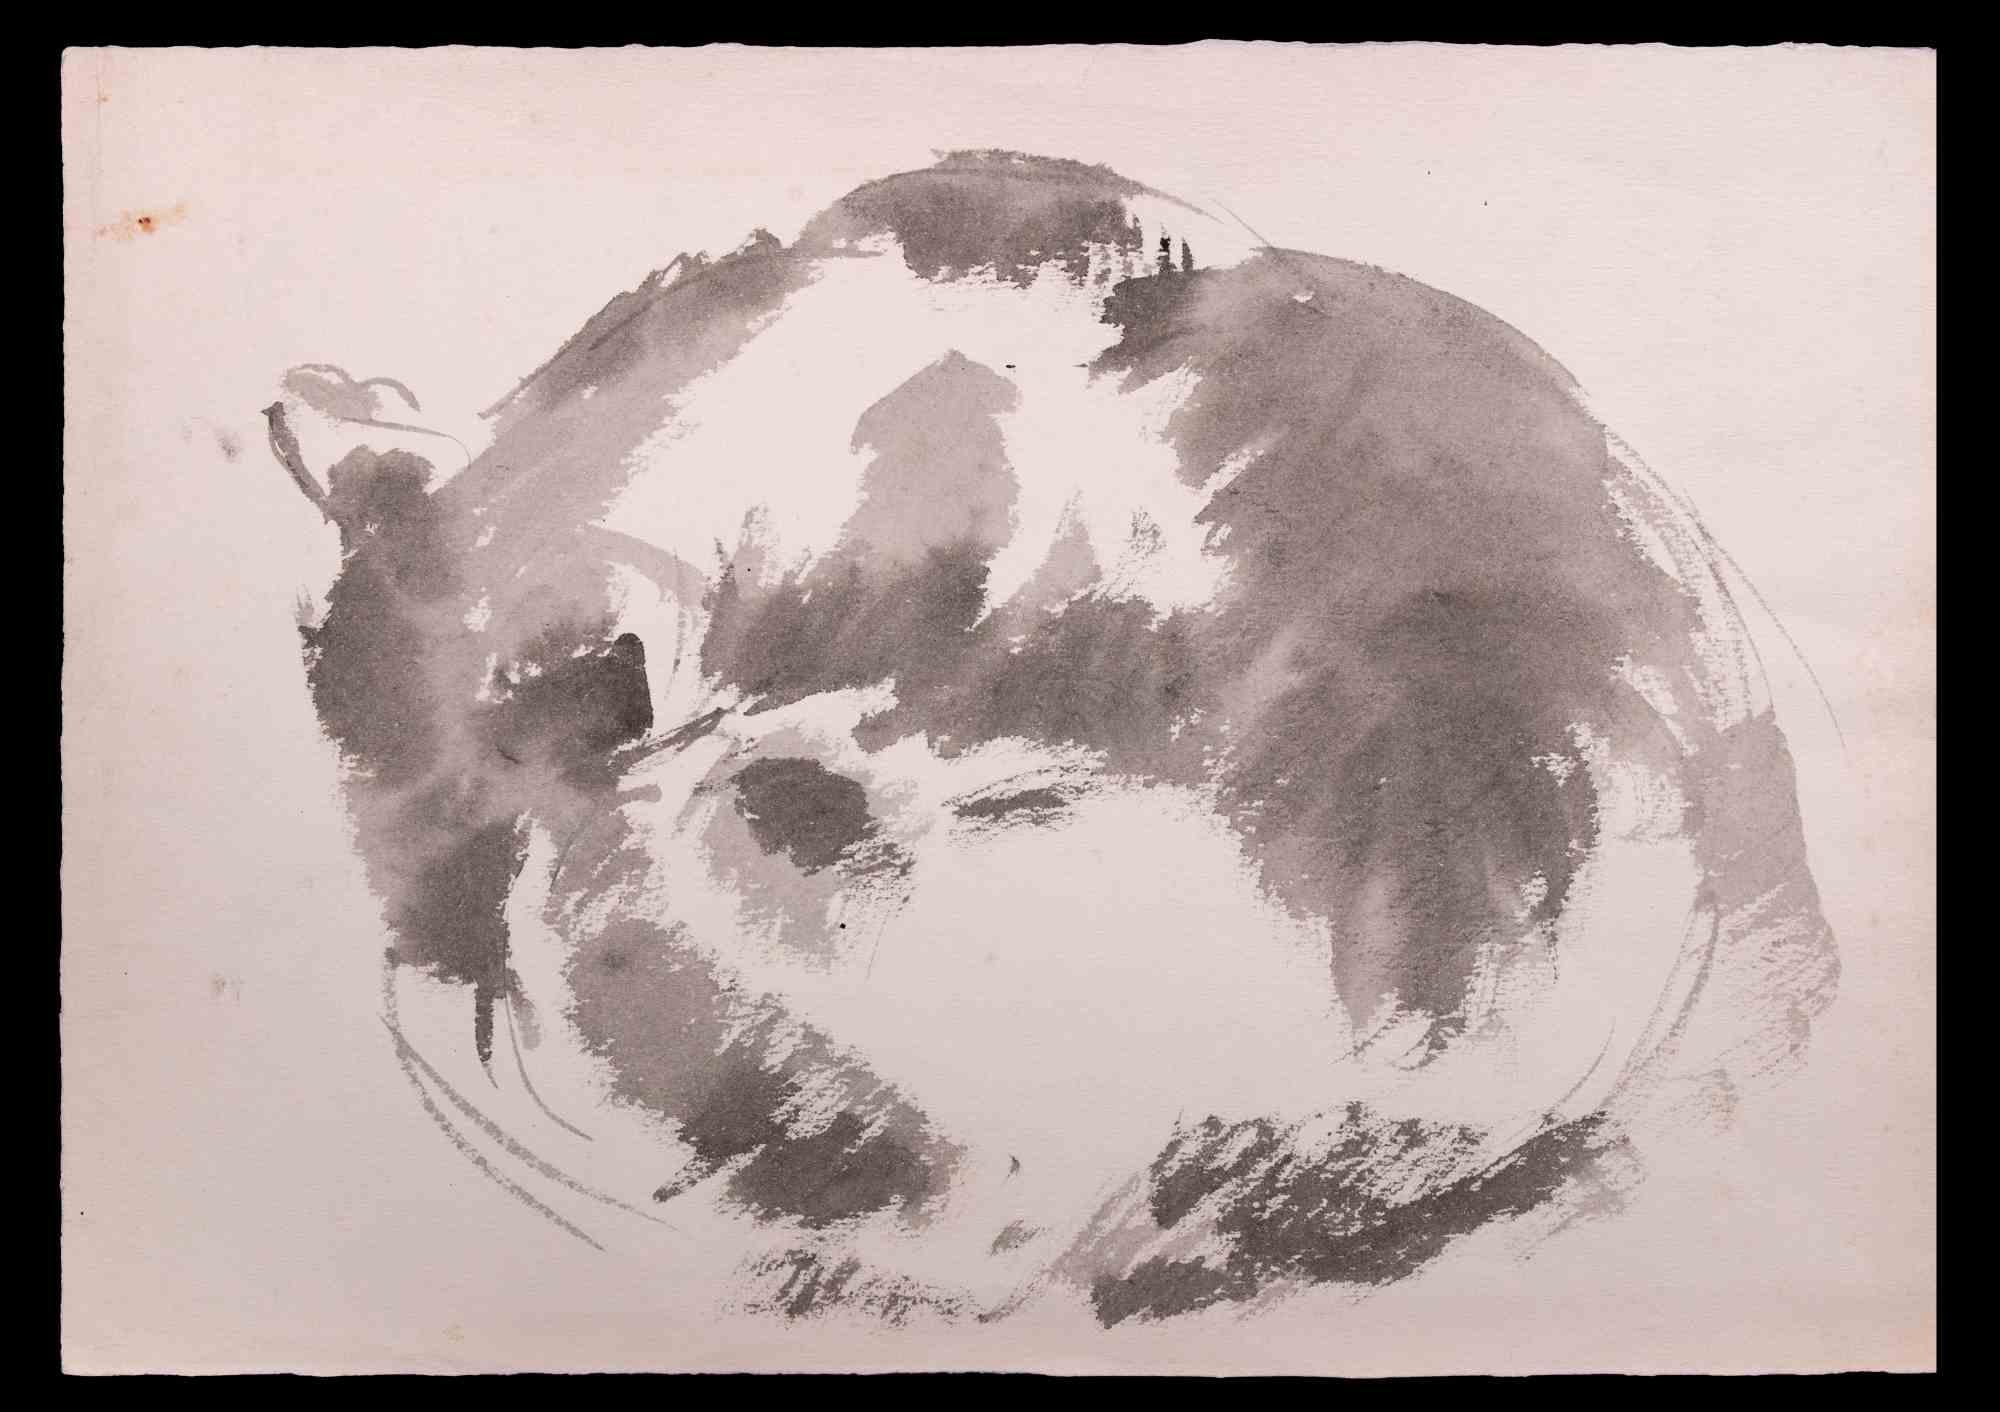 Chat endormi est un dessin au crayon de carbone et à l'aquarelle réalisé par Giselle Halff (1899-1971).

Bonnes conditions.

Giselle Halff (1899-1971) née à Hanoi, élève de R.X. Prinet, R. Ménard, L. Simon, B. Boutet de Monvel. Peintre et